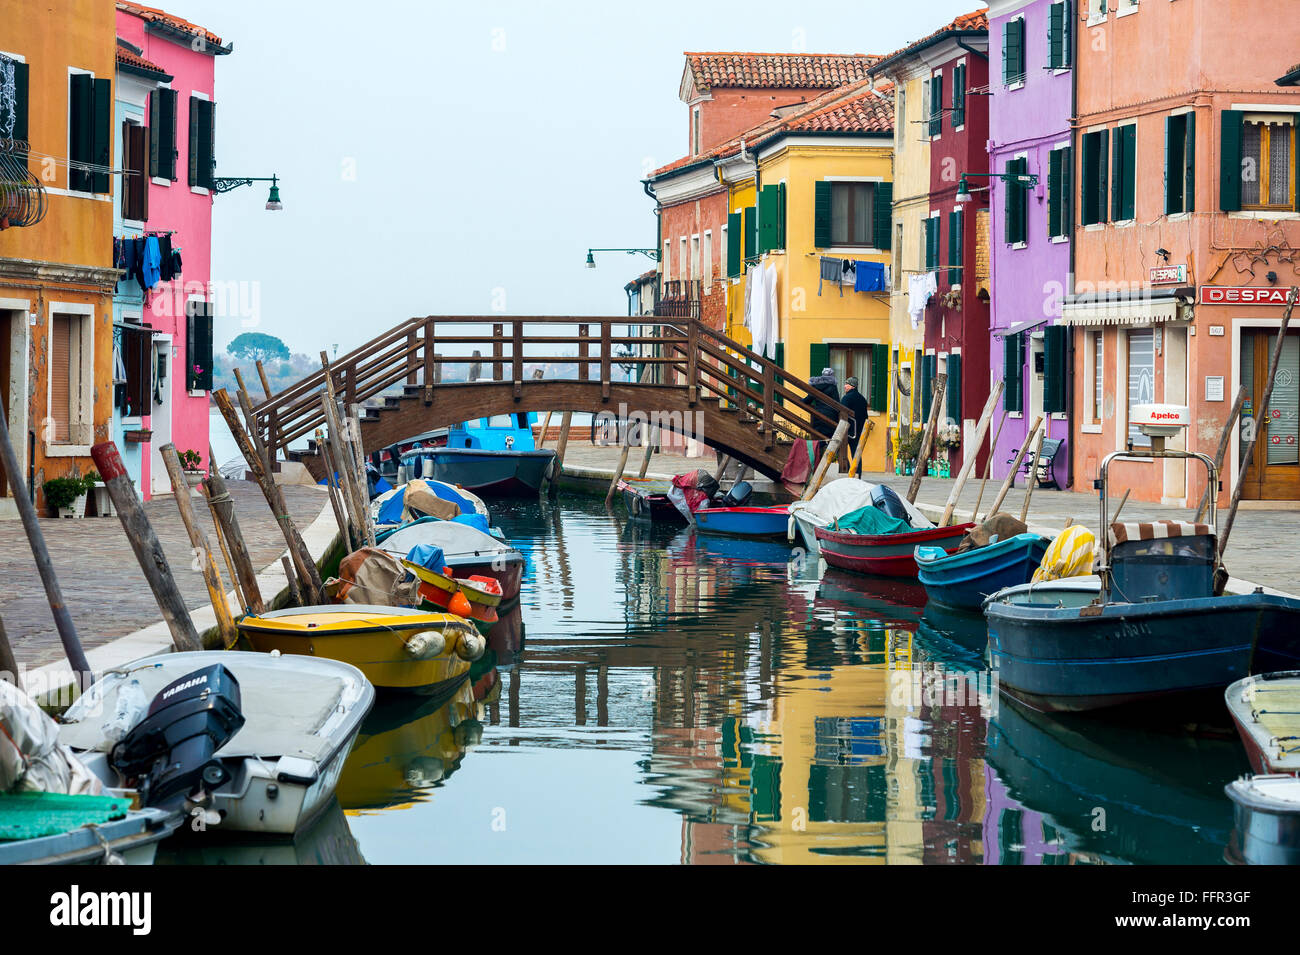 Case colorate sul canal con barche, Burano, Venezia, Veneto, Italia Foto Stock